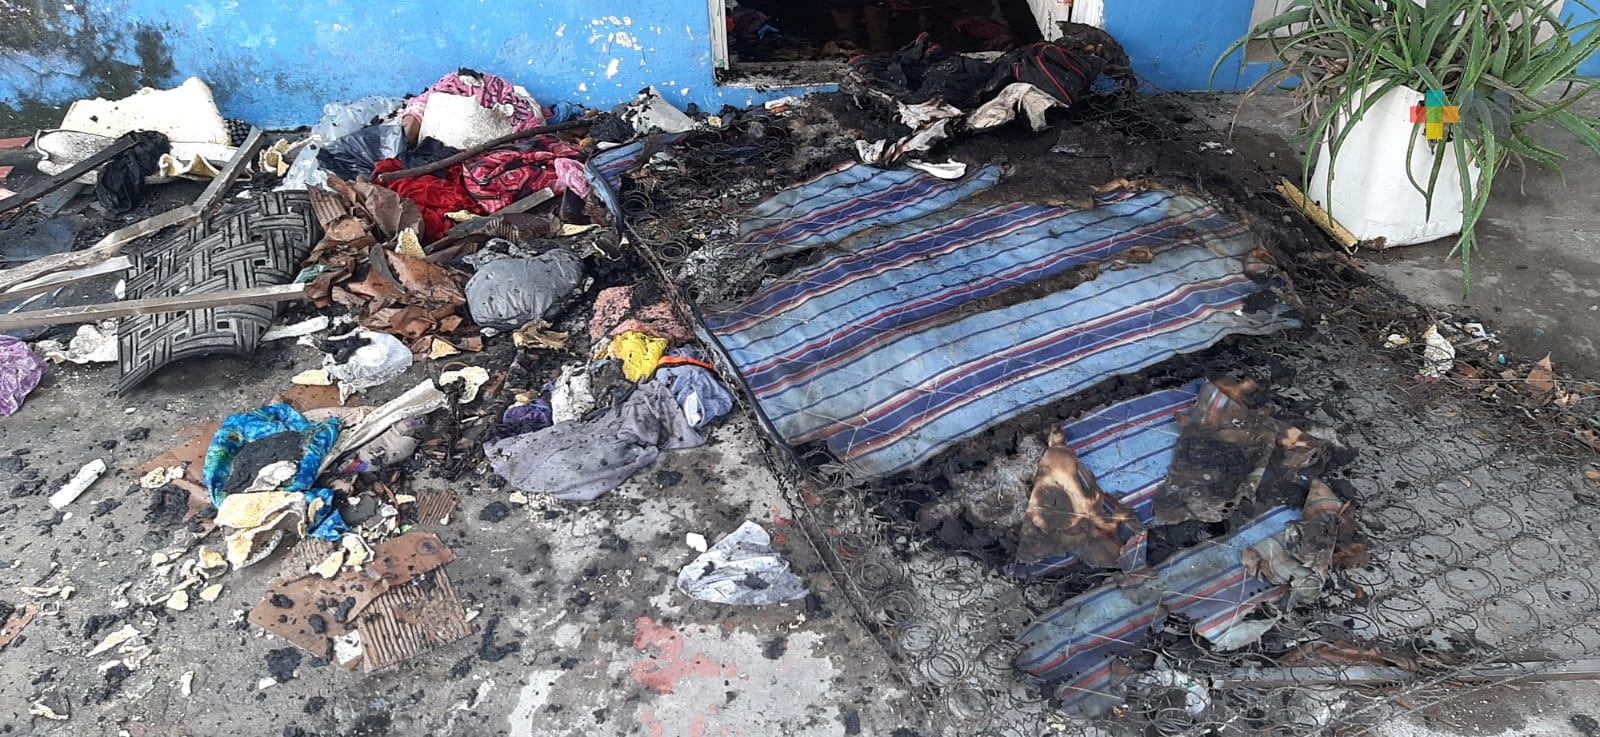 Incendio en vivienda de Veracruz puerto; no se reportan lesionados